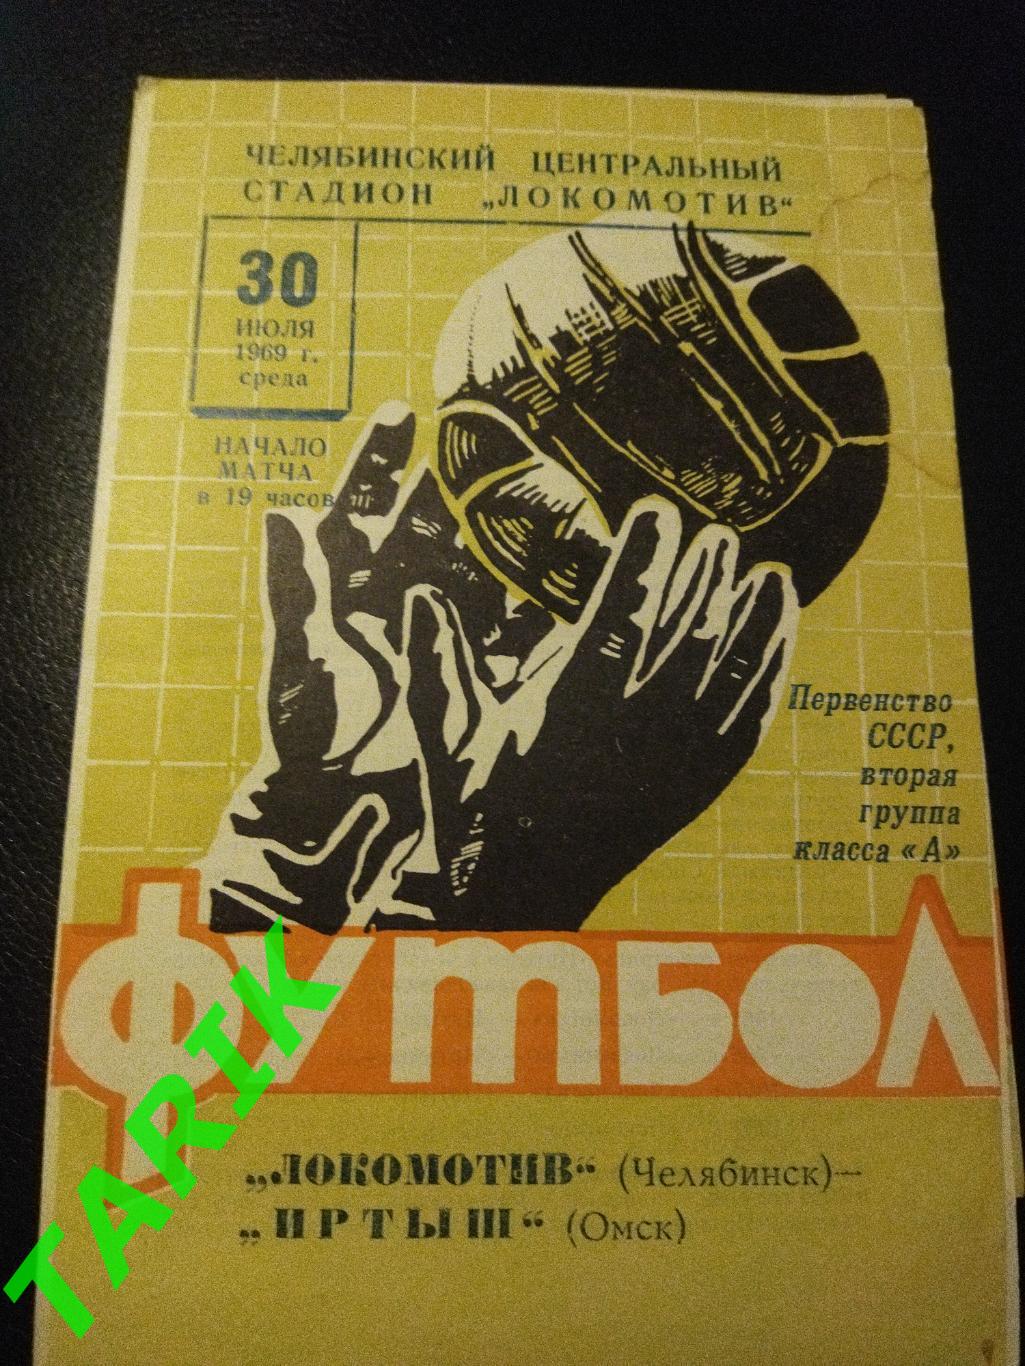 Локомотив Челябинск - Иртыш Омск 1969